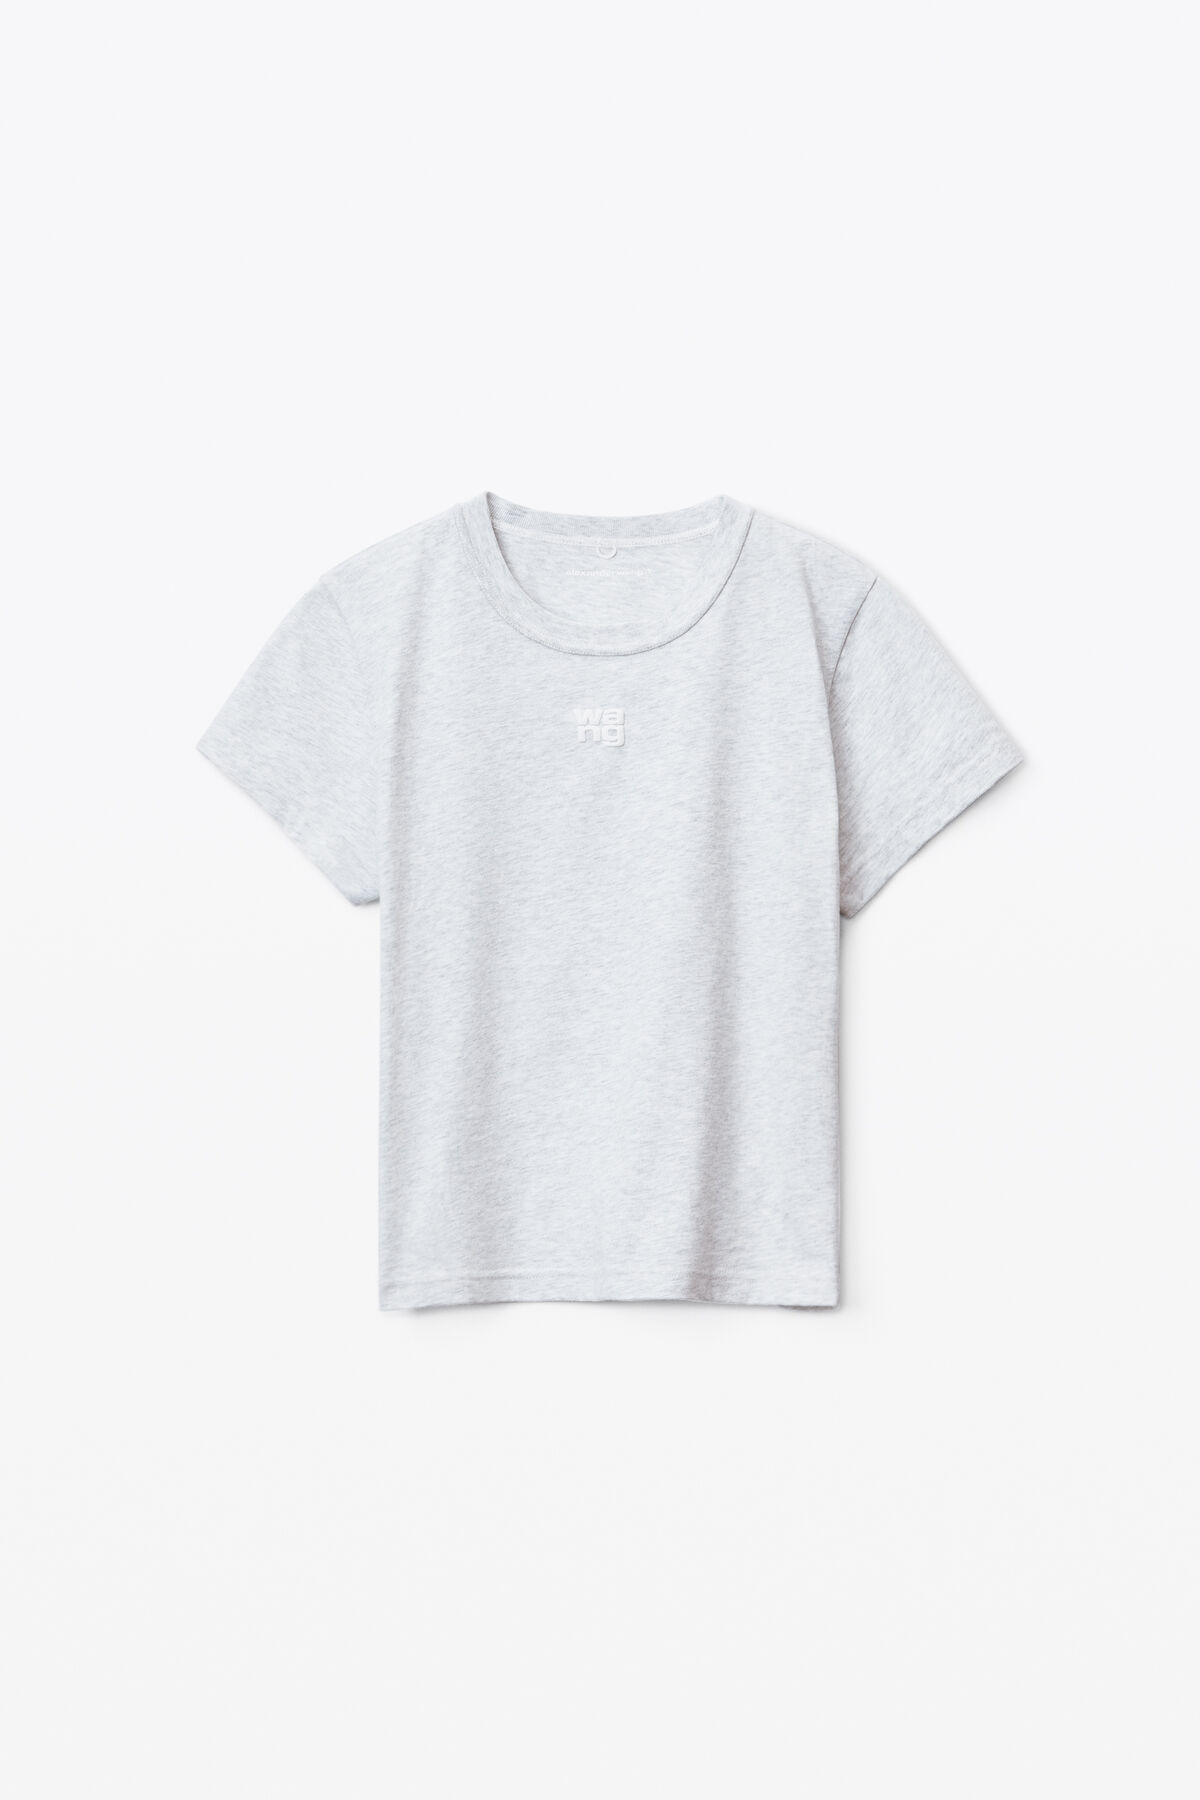 ALEXANDER WANG: t-shirt for woman - Grey  Alexander Wang t-shirt  UCC1241698 online at